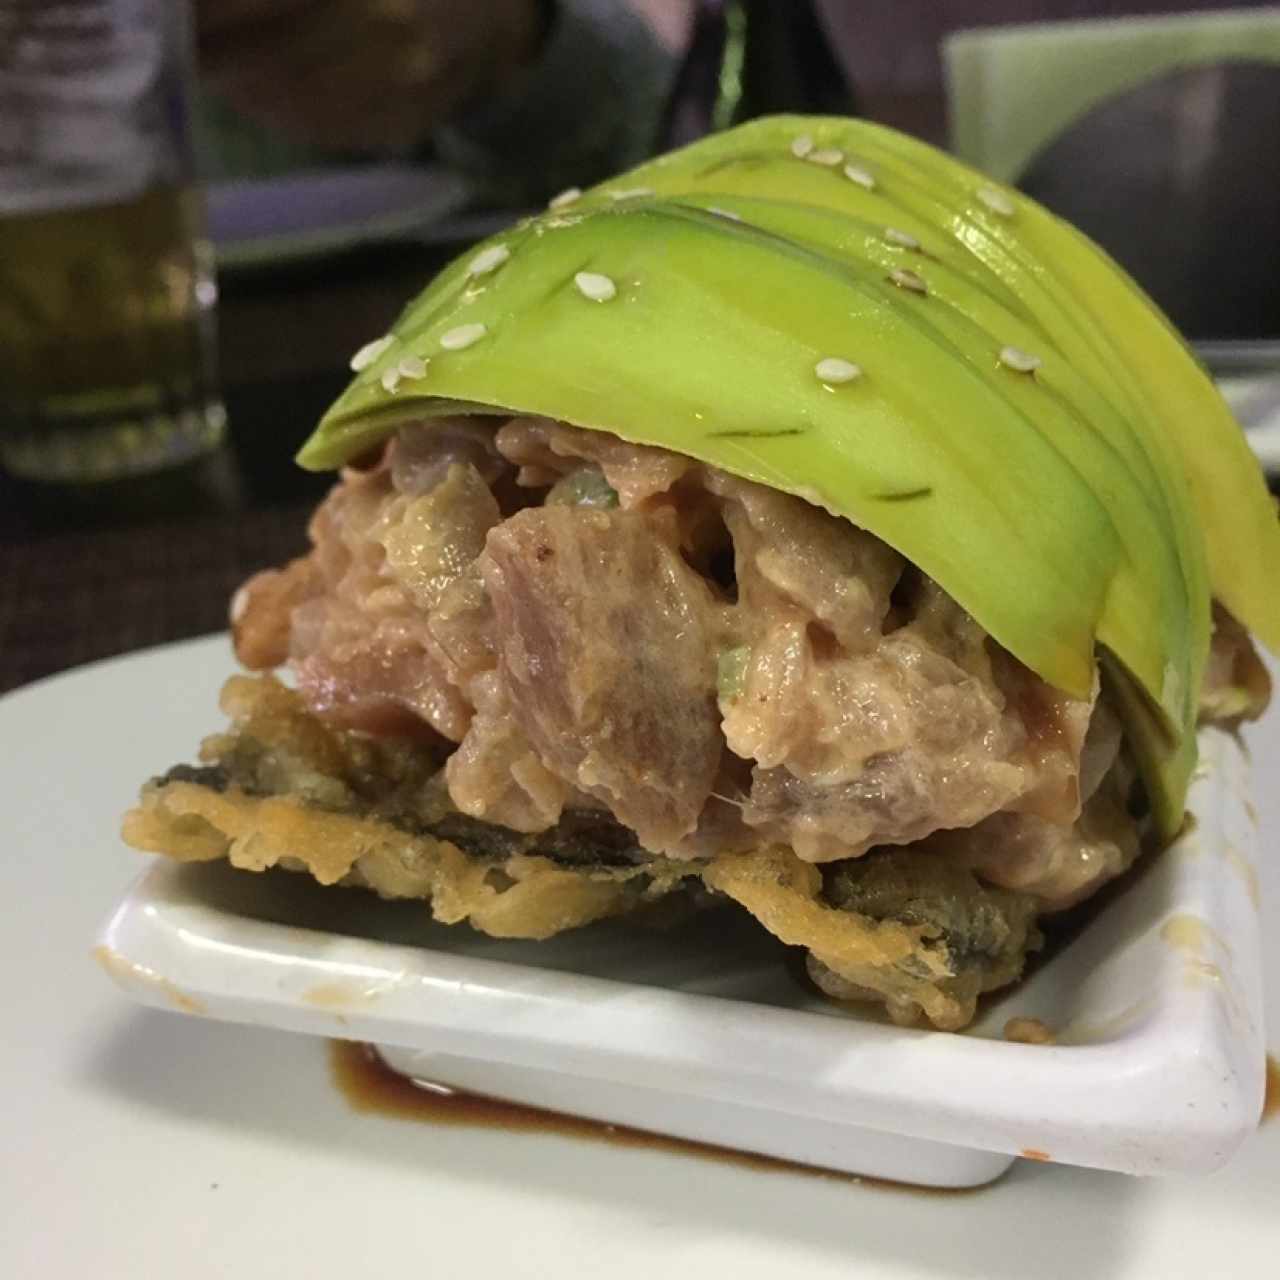 Taco Sushi